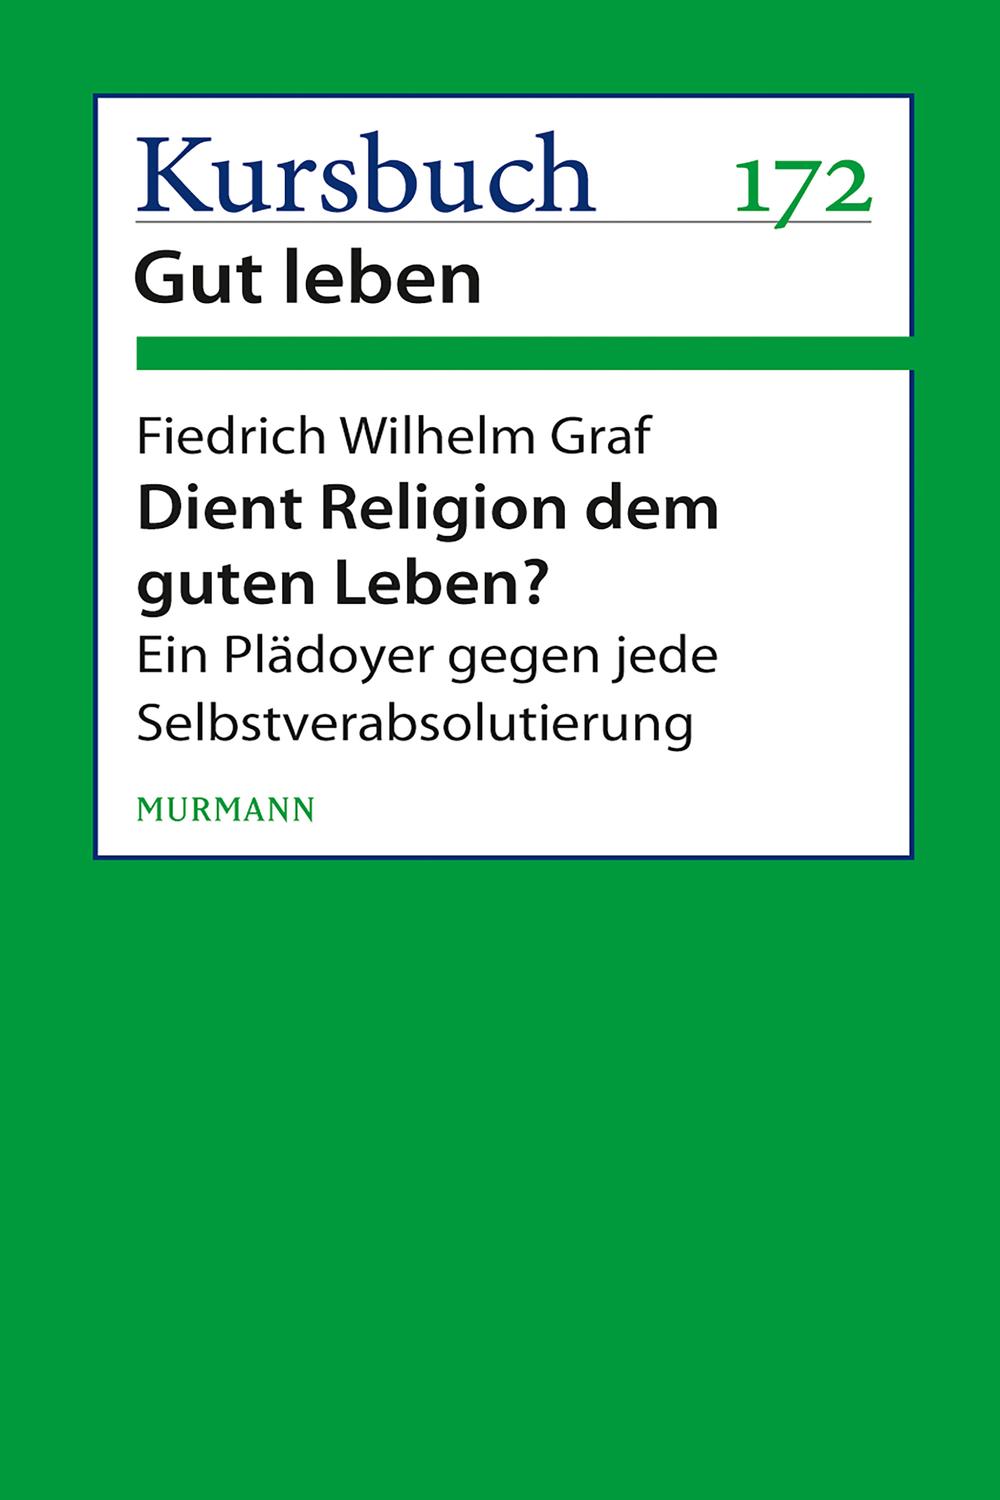 Dient Religion dem guten Leben? - Friedrich Wilhelm Graf